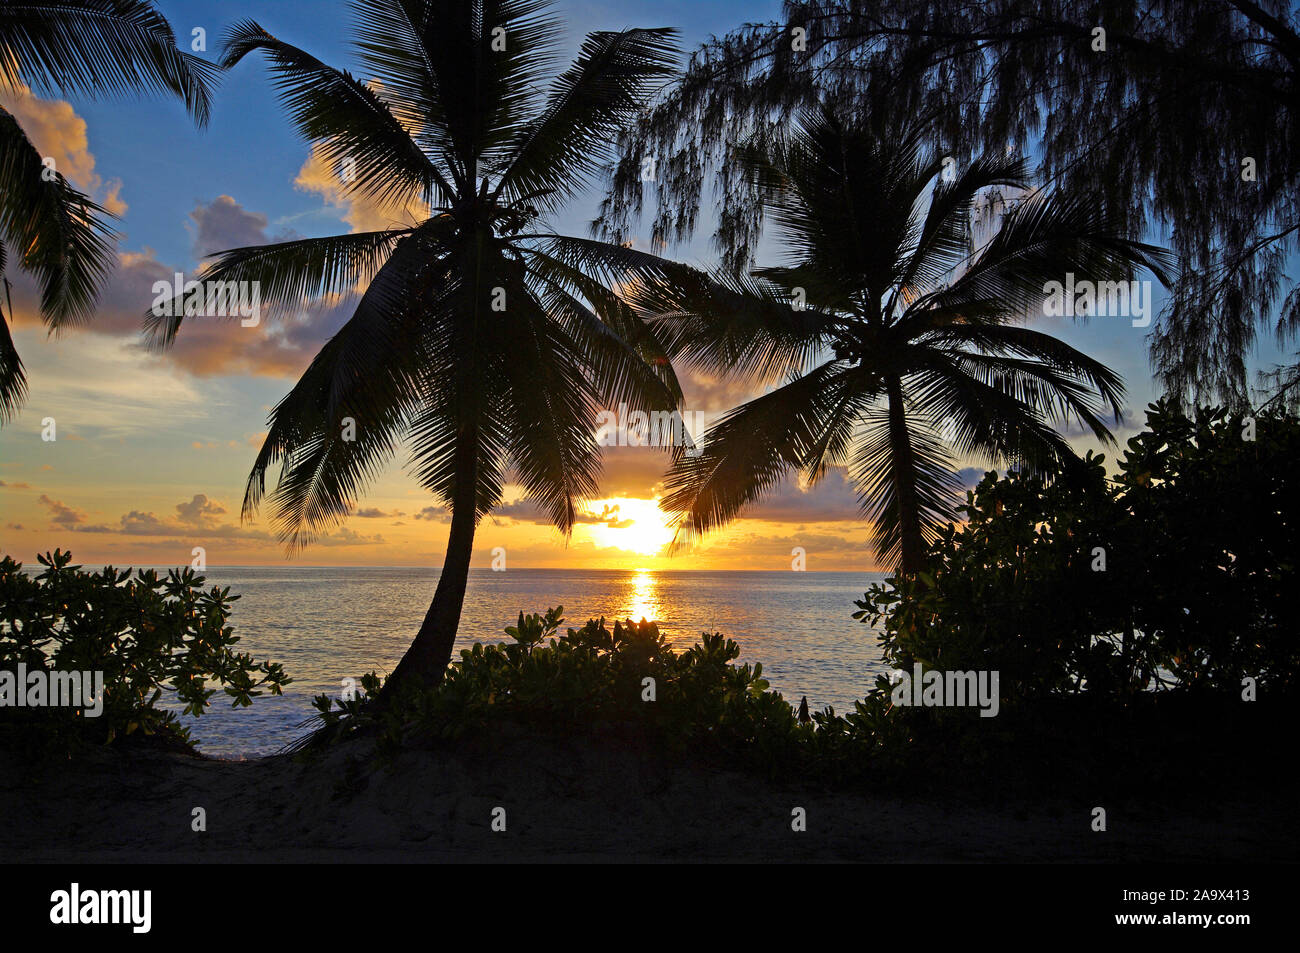 Silhouette von Offenburg am Strand der Anse Takamaka, idyllische und romantische szene im Süden der Hauptinsel Mahe, Tropenparadies Seychellen Foto Stock